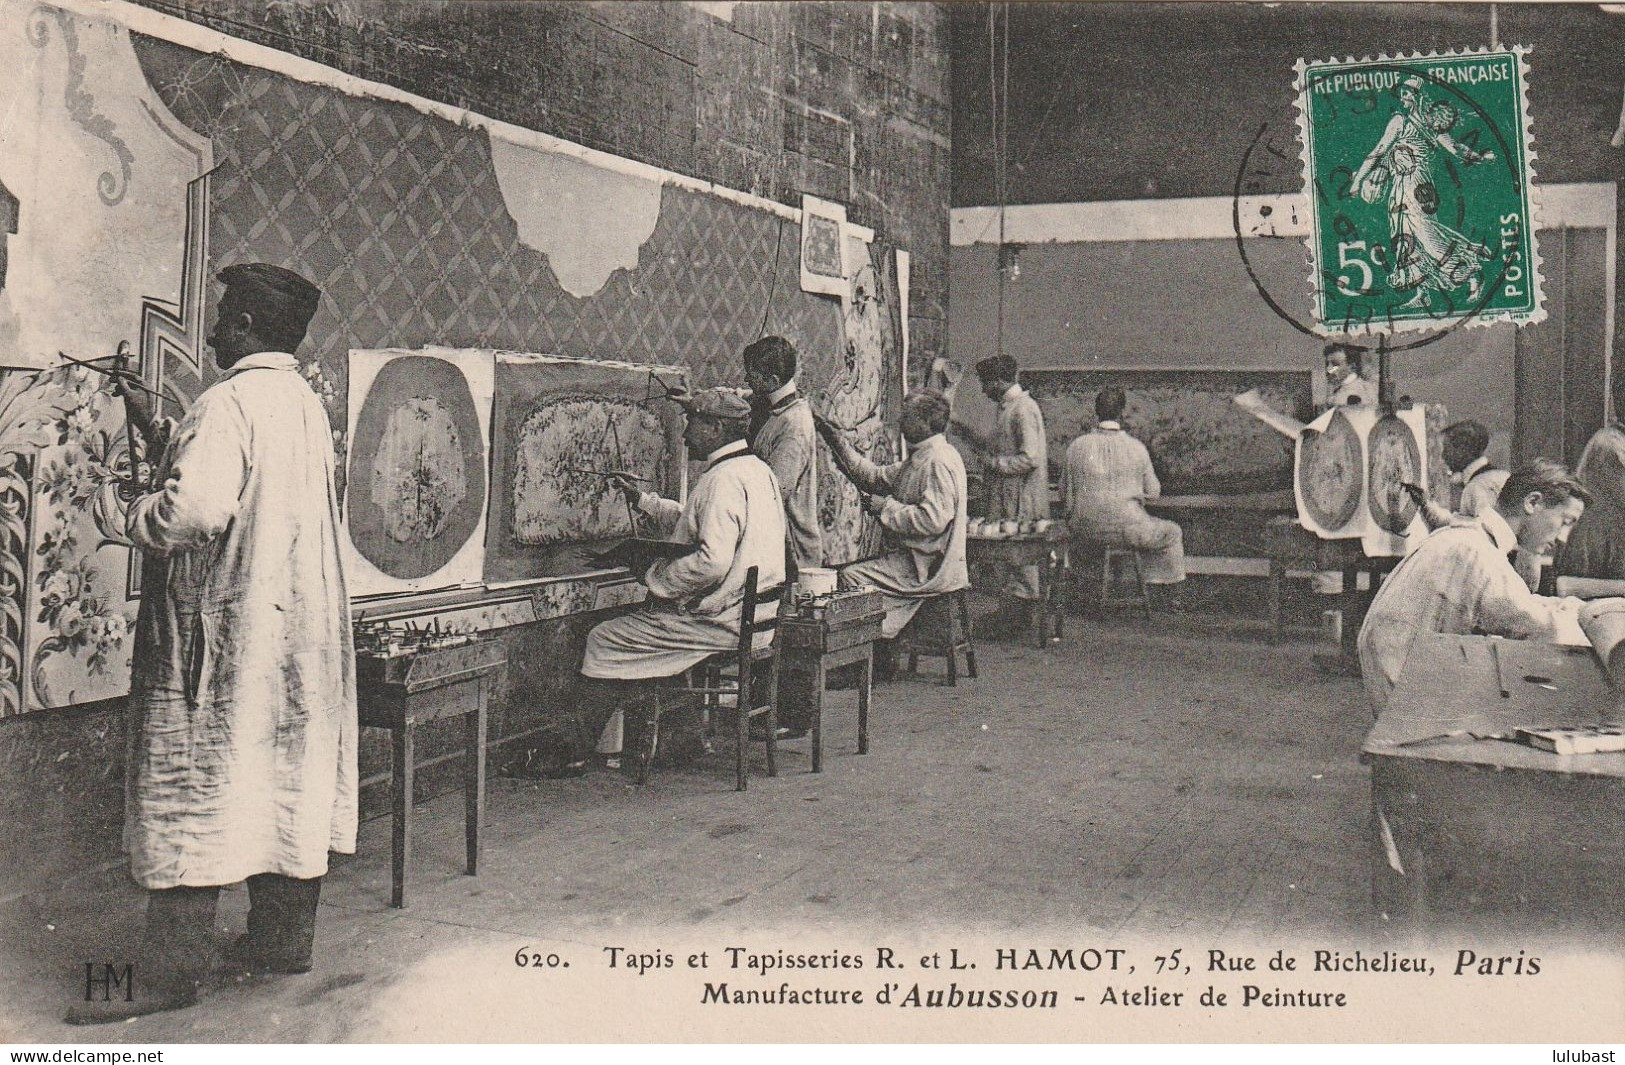 PARIS, 75 Rue De Richelieu - Tapis R. L. HAMOT D'Aubusson : Atelier De Peinture. - District 02